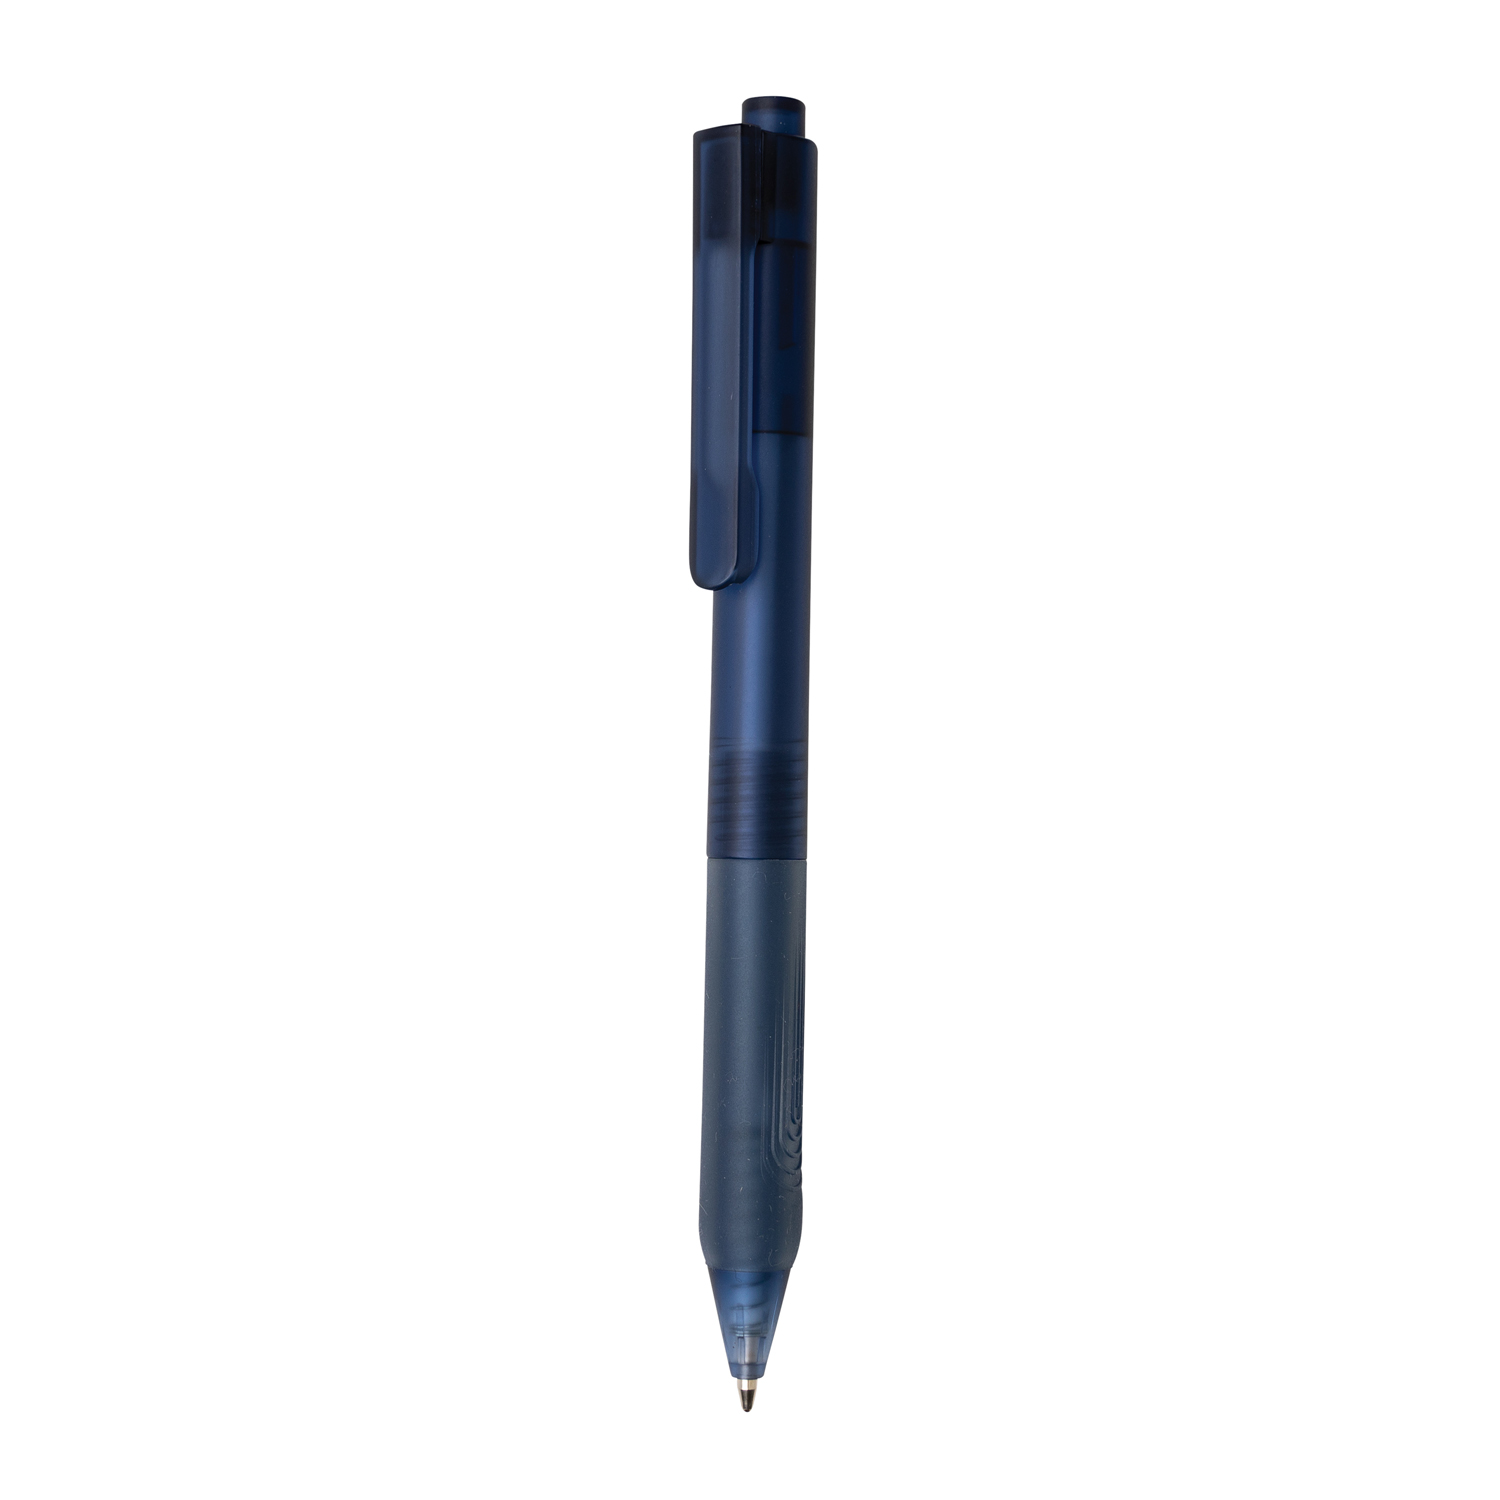 Артикул: XP610.799 — Ручка X9 с матовым корпусом и силиконовым грипом